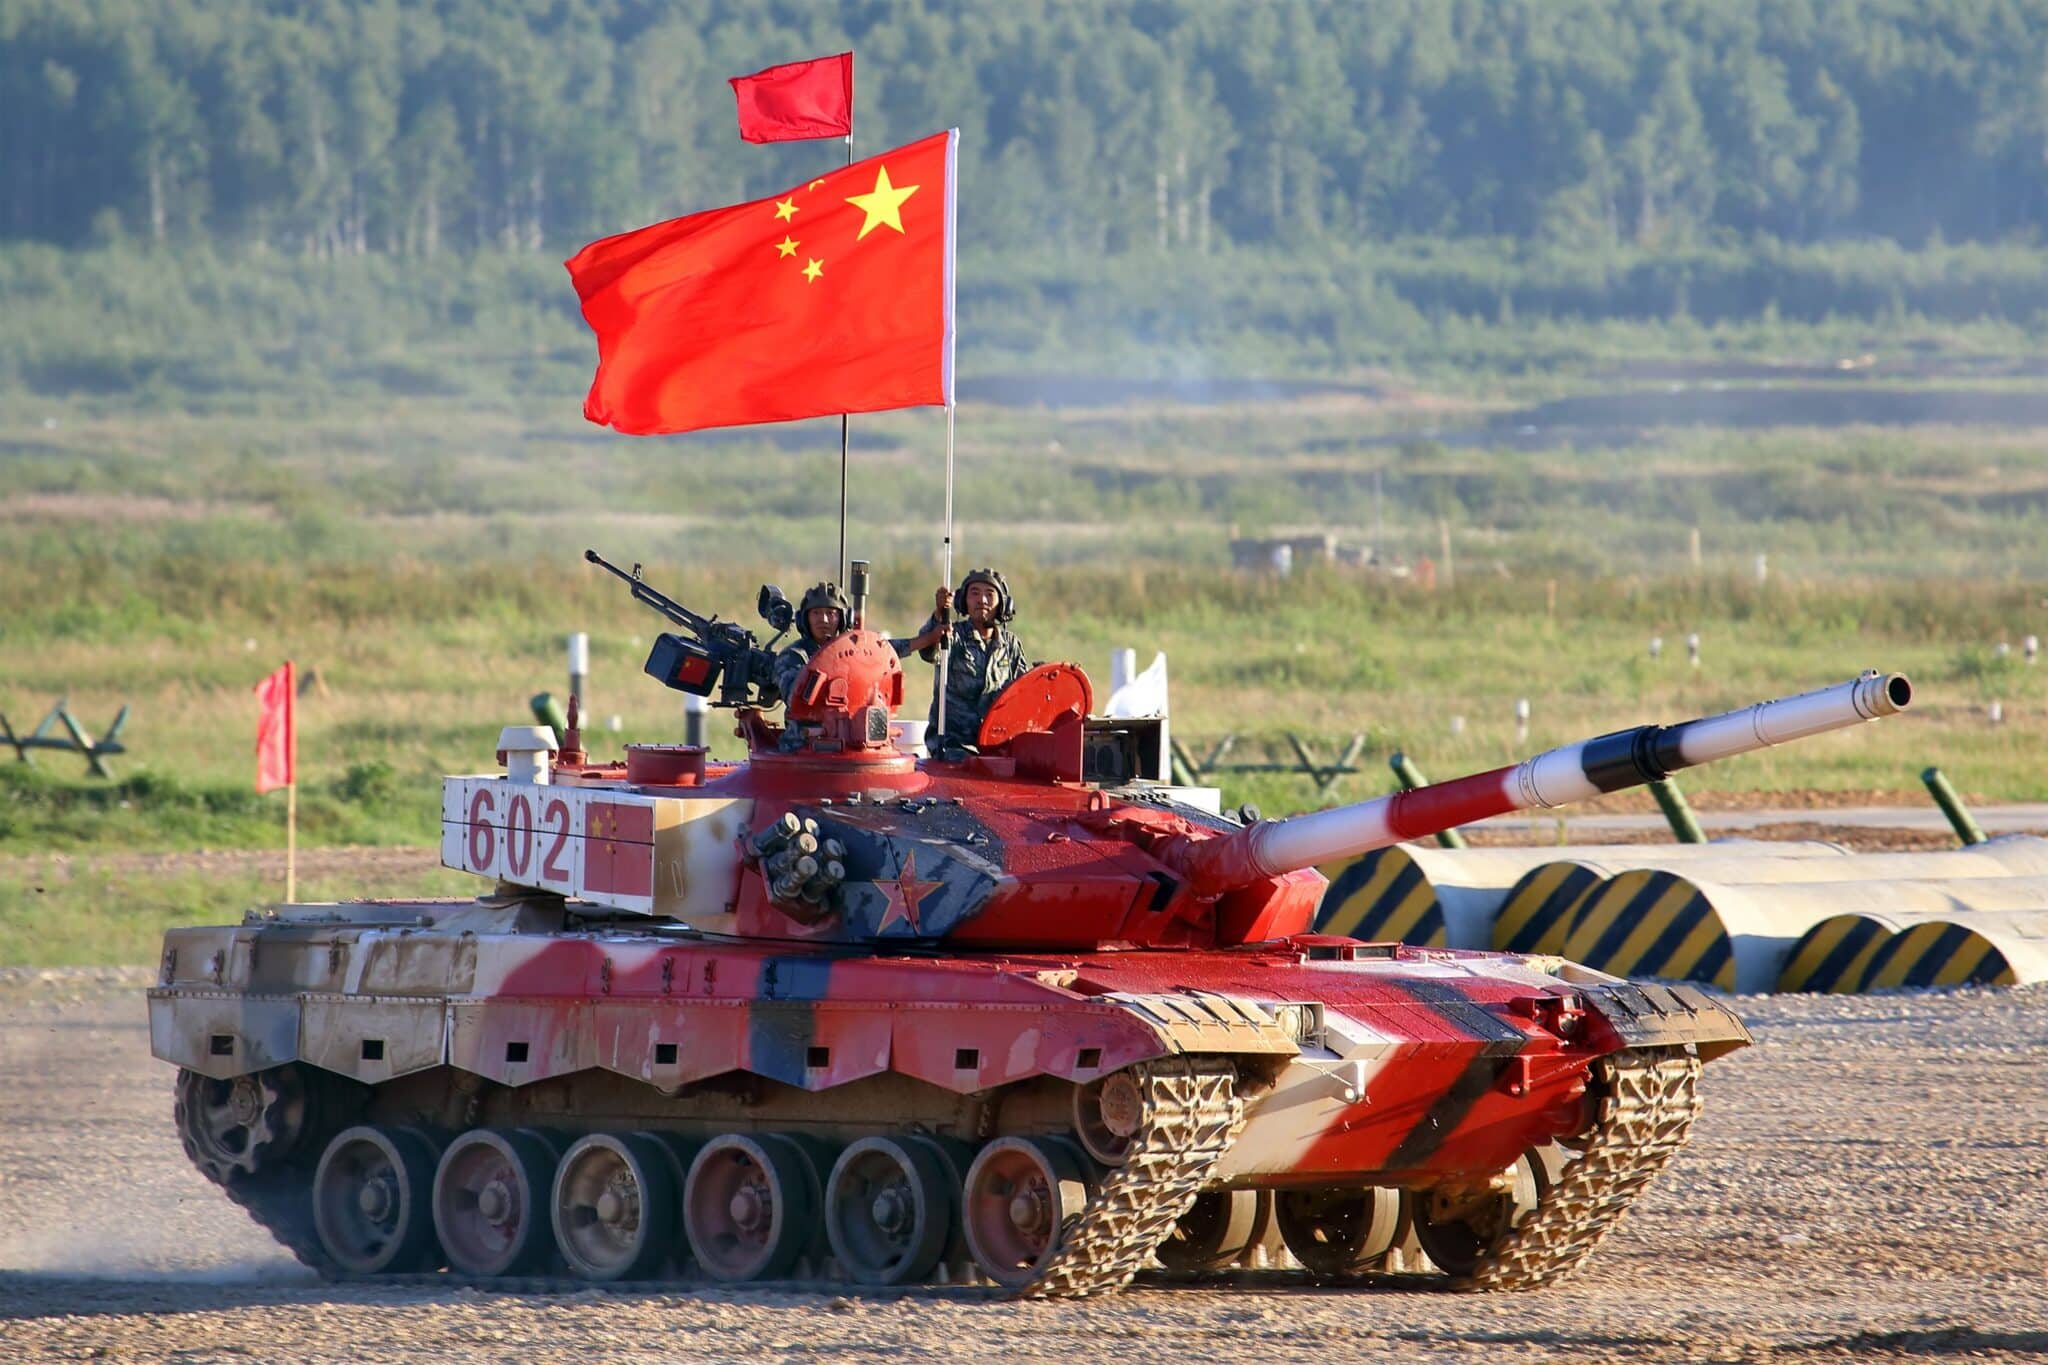 |Chiny szykują się do wojny|cixin liu|chiny wojsko